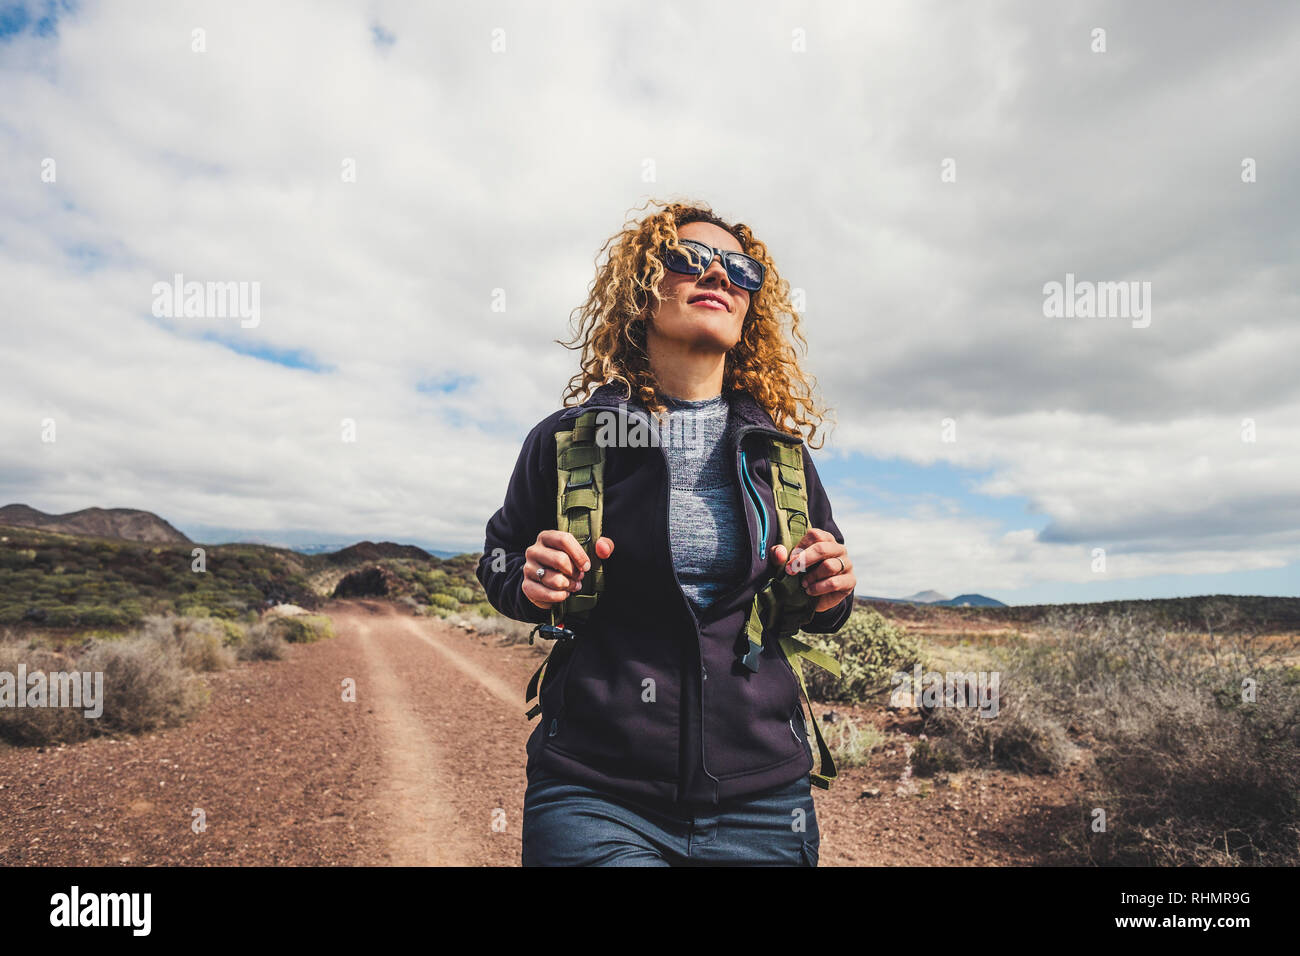 Vestiti da trekking immagini e fotografie stock ad alta risoluzione - Alamy